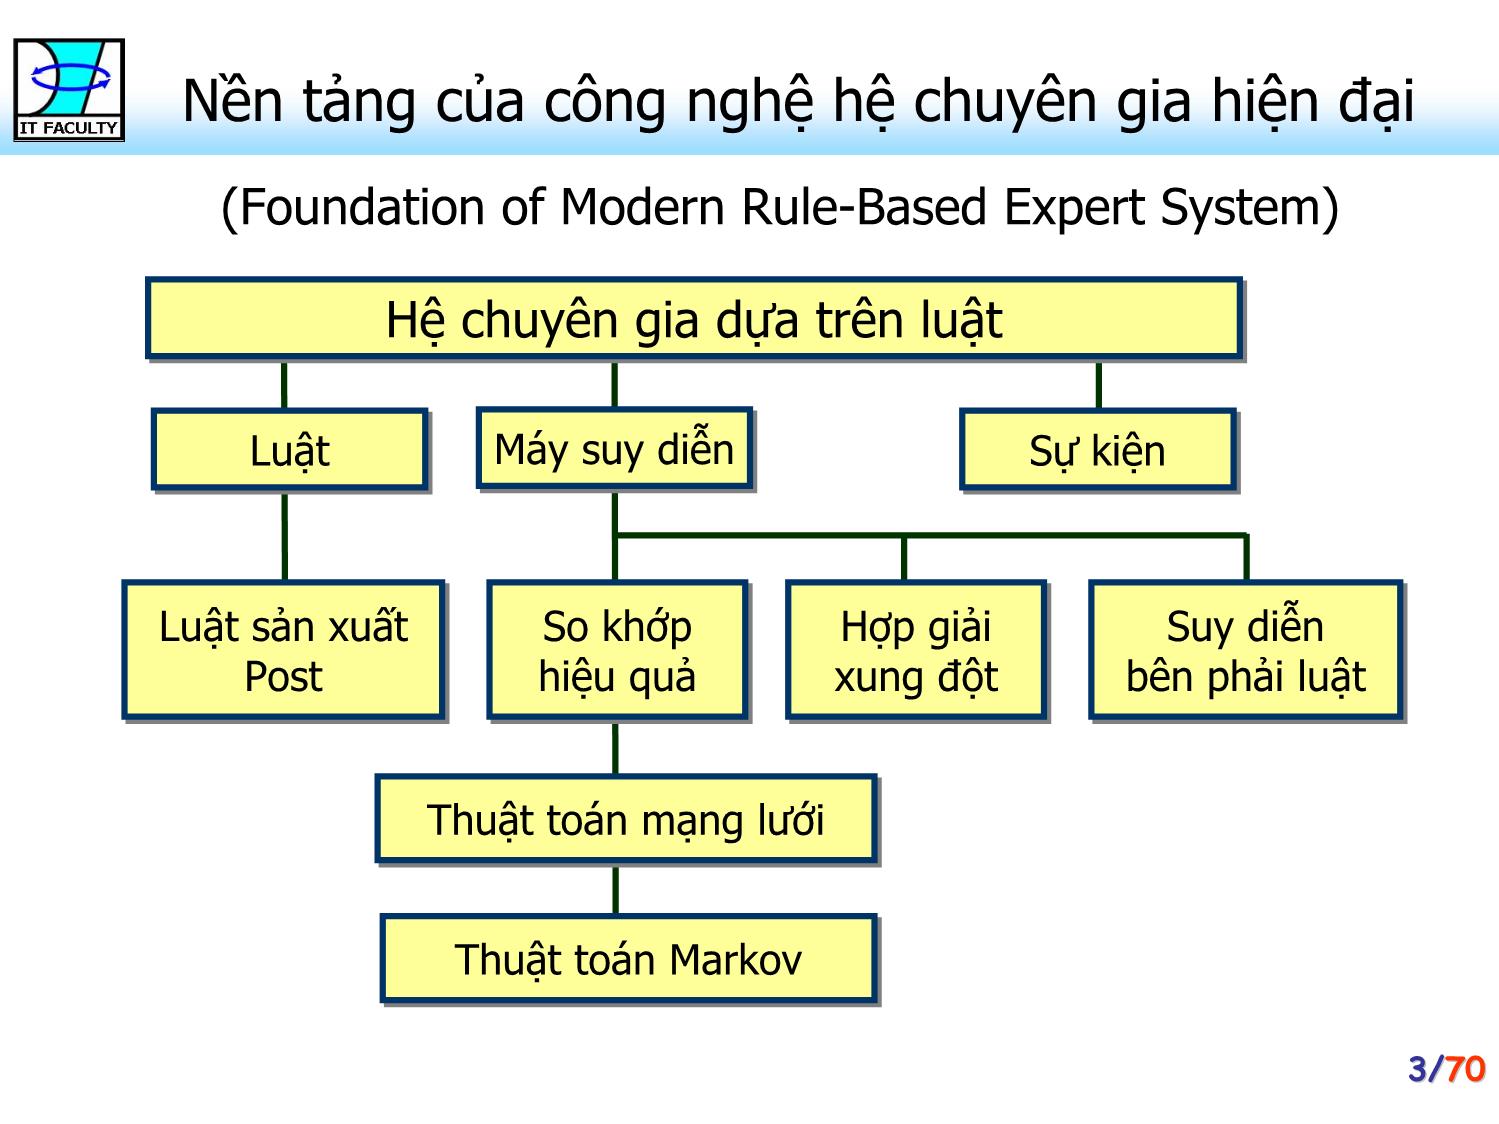 Bài giảng Hệ chuyên gia - Chương 3: Máy suy diễn - Phan Huy Khánh trang 3